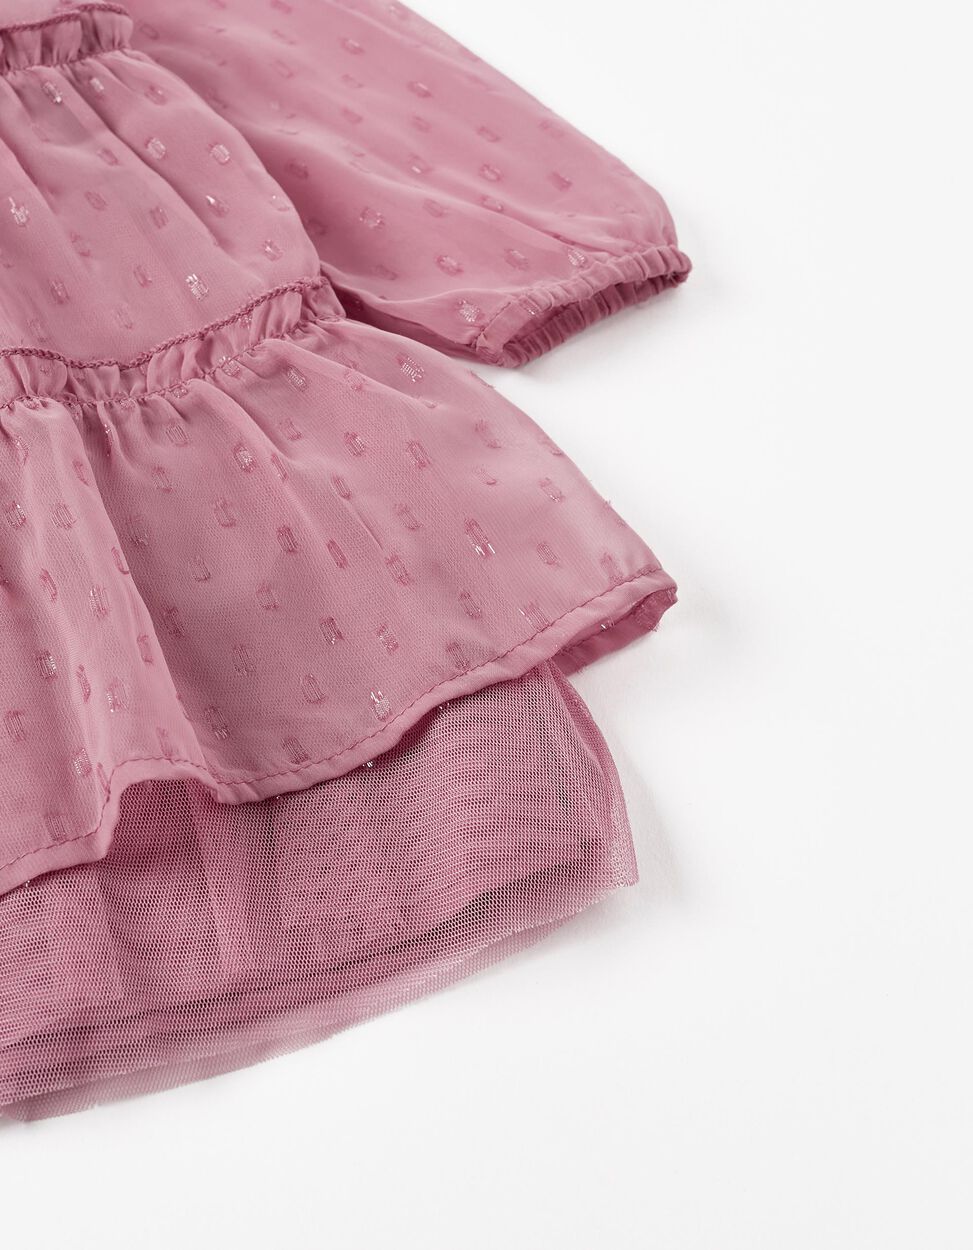 Buy Online Long Sleeve Dress for Baby Girls, Light Purple